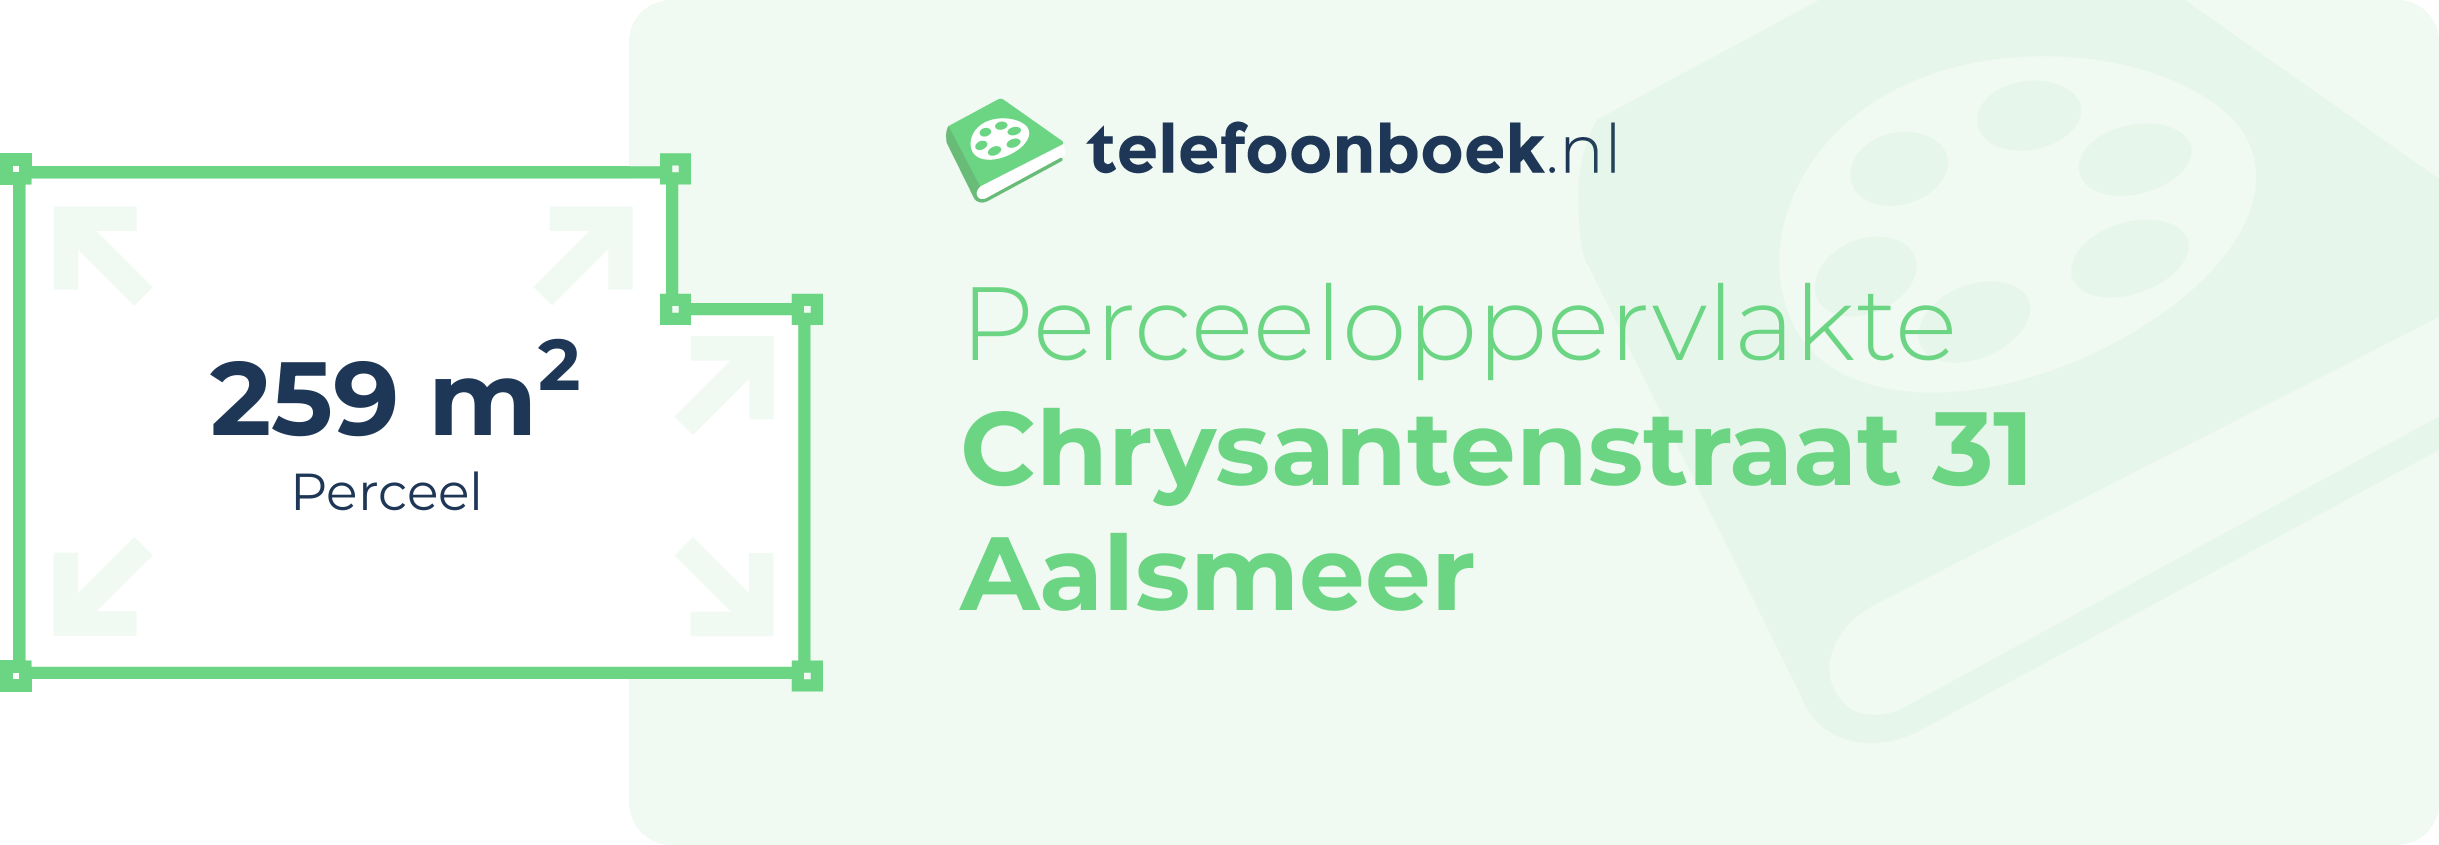 Perceeloppervlakte Chrysantenstraat 31 Aalsmeer